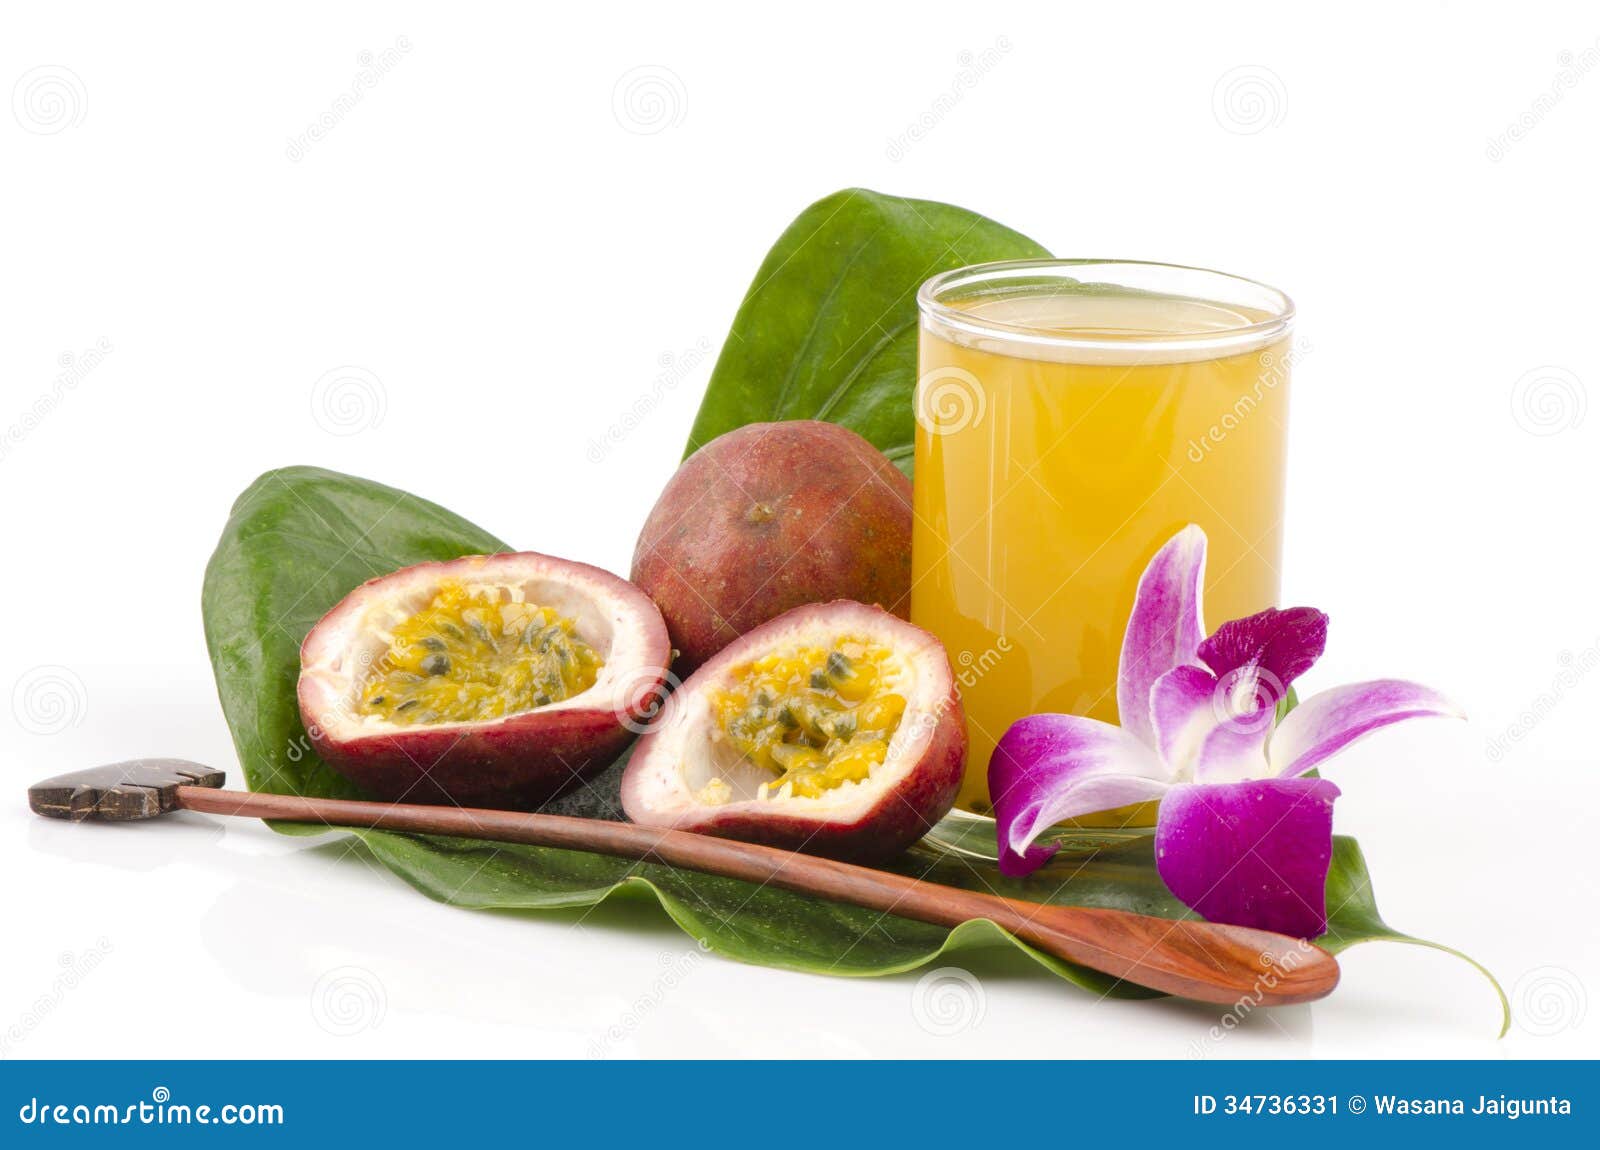 passionfruit (passiflora edulis)